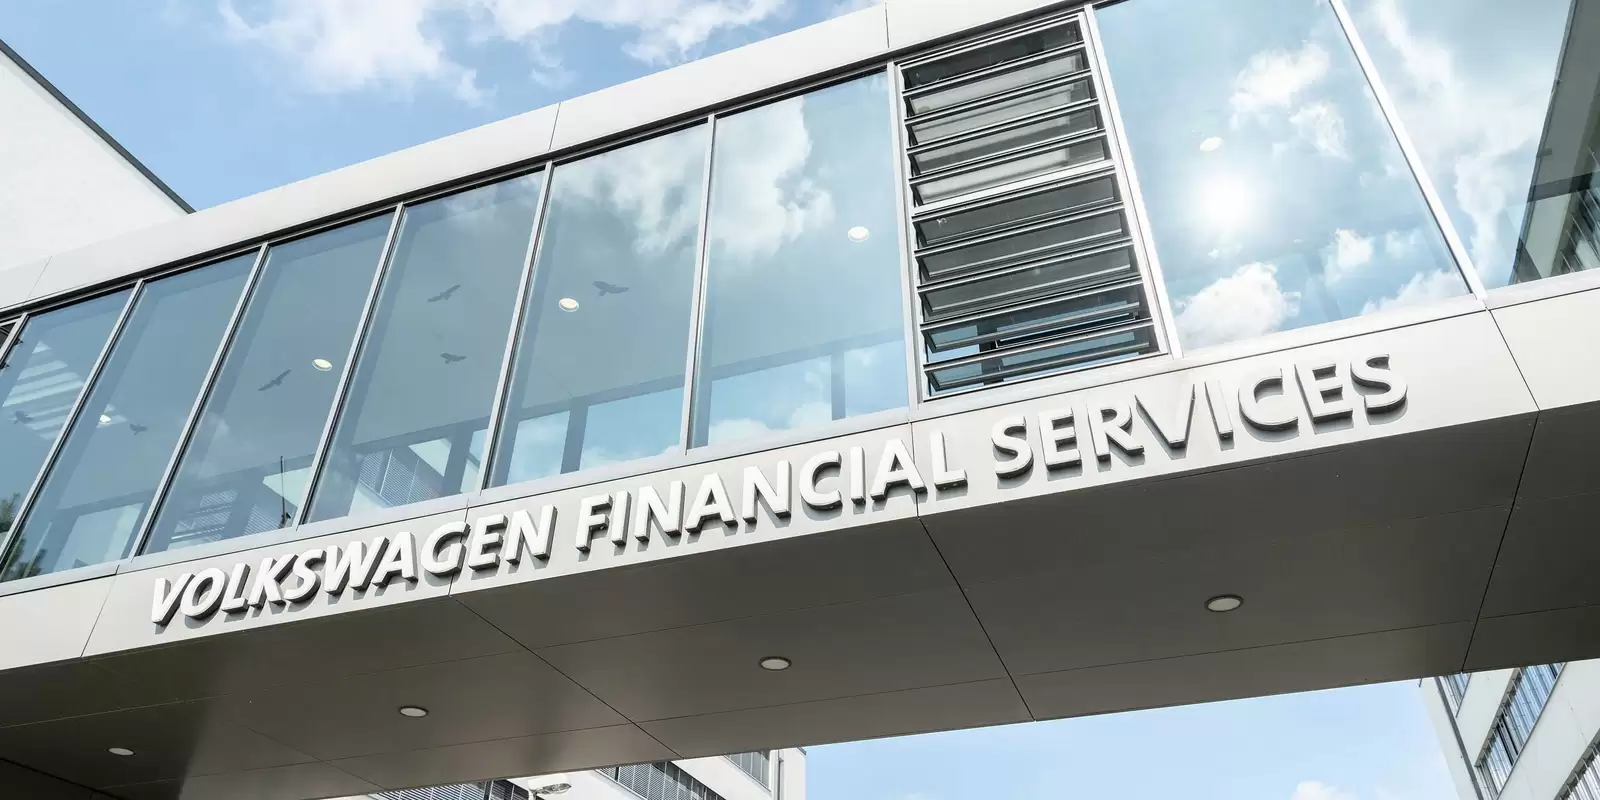 Gebäude mit Volkswagen Financial Services Schriftzug